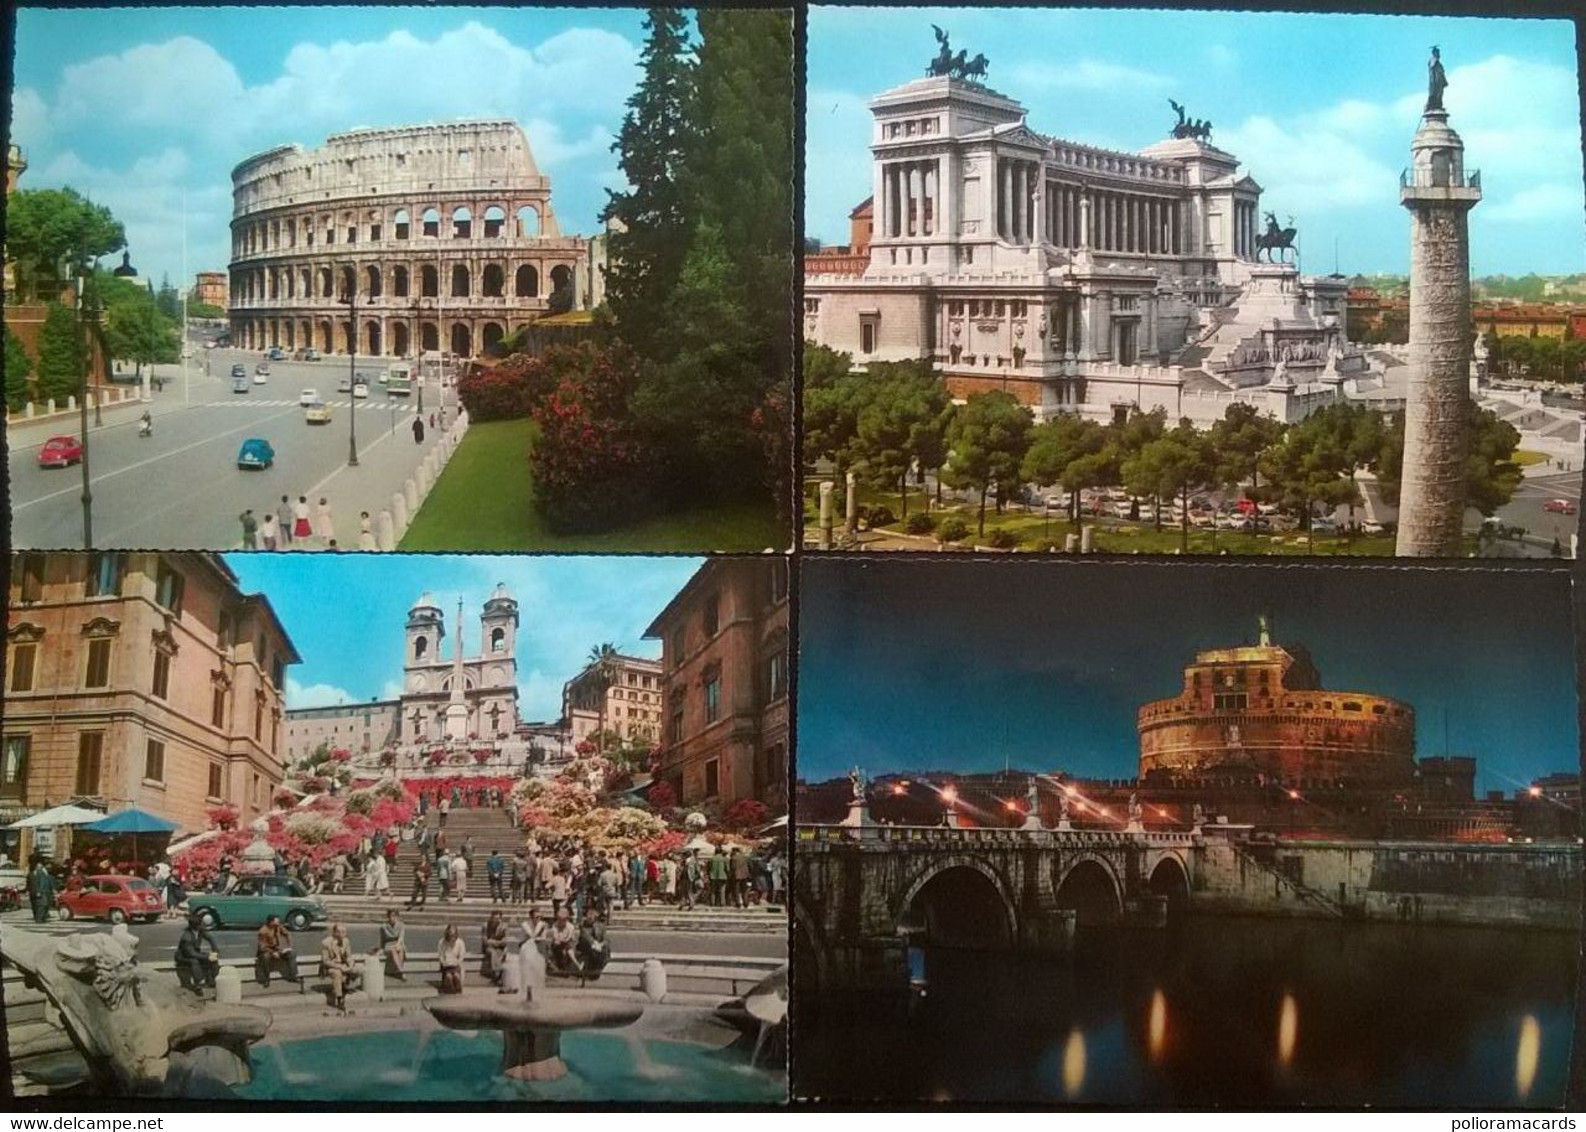 Roma - Lotto Di 20 Cartoline A Col. FG ~148 X 208mm - Colecciones & Lotes